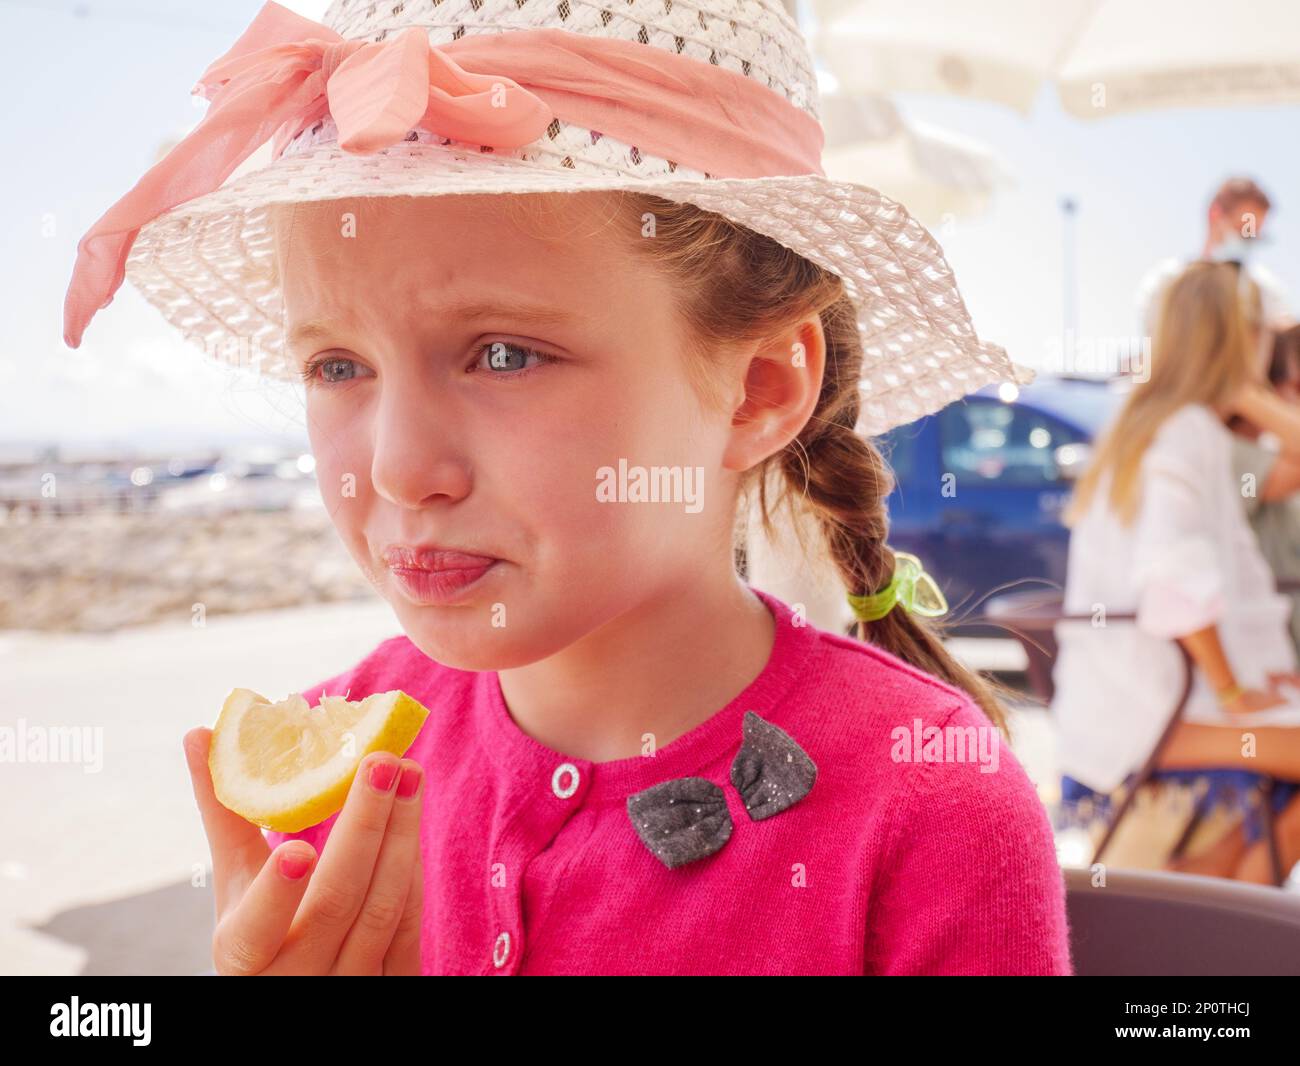 La jeune fille tire un visage du goût aigre de manger une tranche de citron Banque D'Images